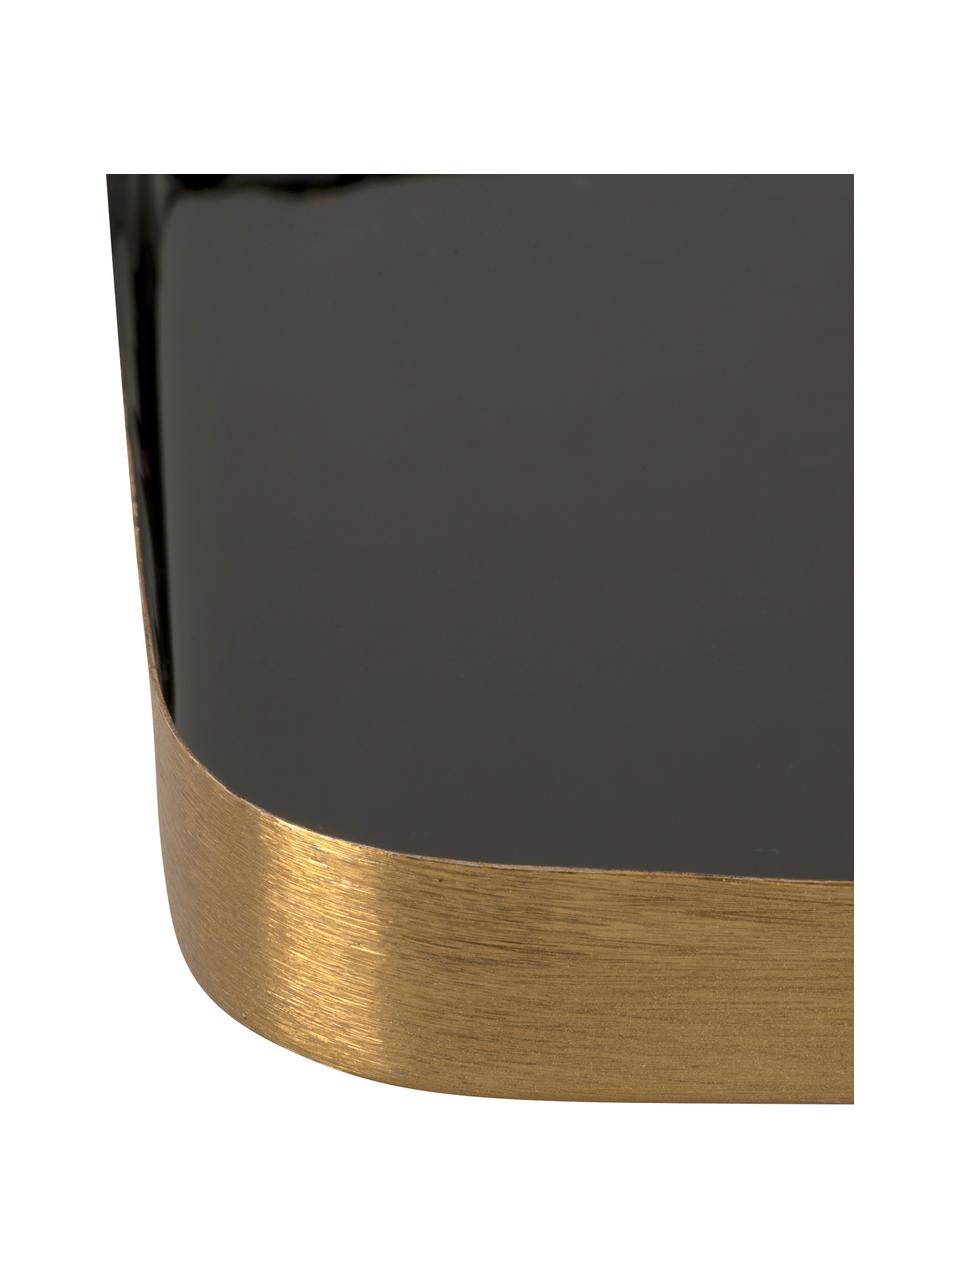 Vassoio decorativo nero con finitura lucida Festive, Metallo rivestito, Nero, dorato, Lung. 25 x Larg. 13 cm